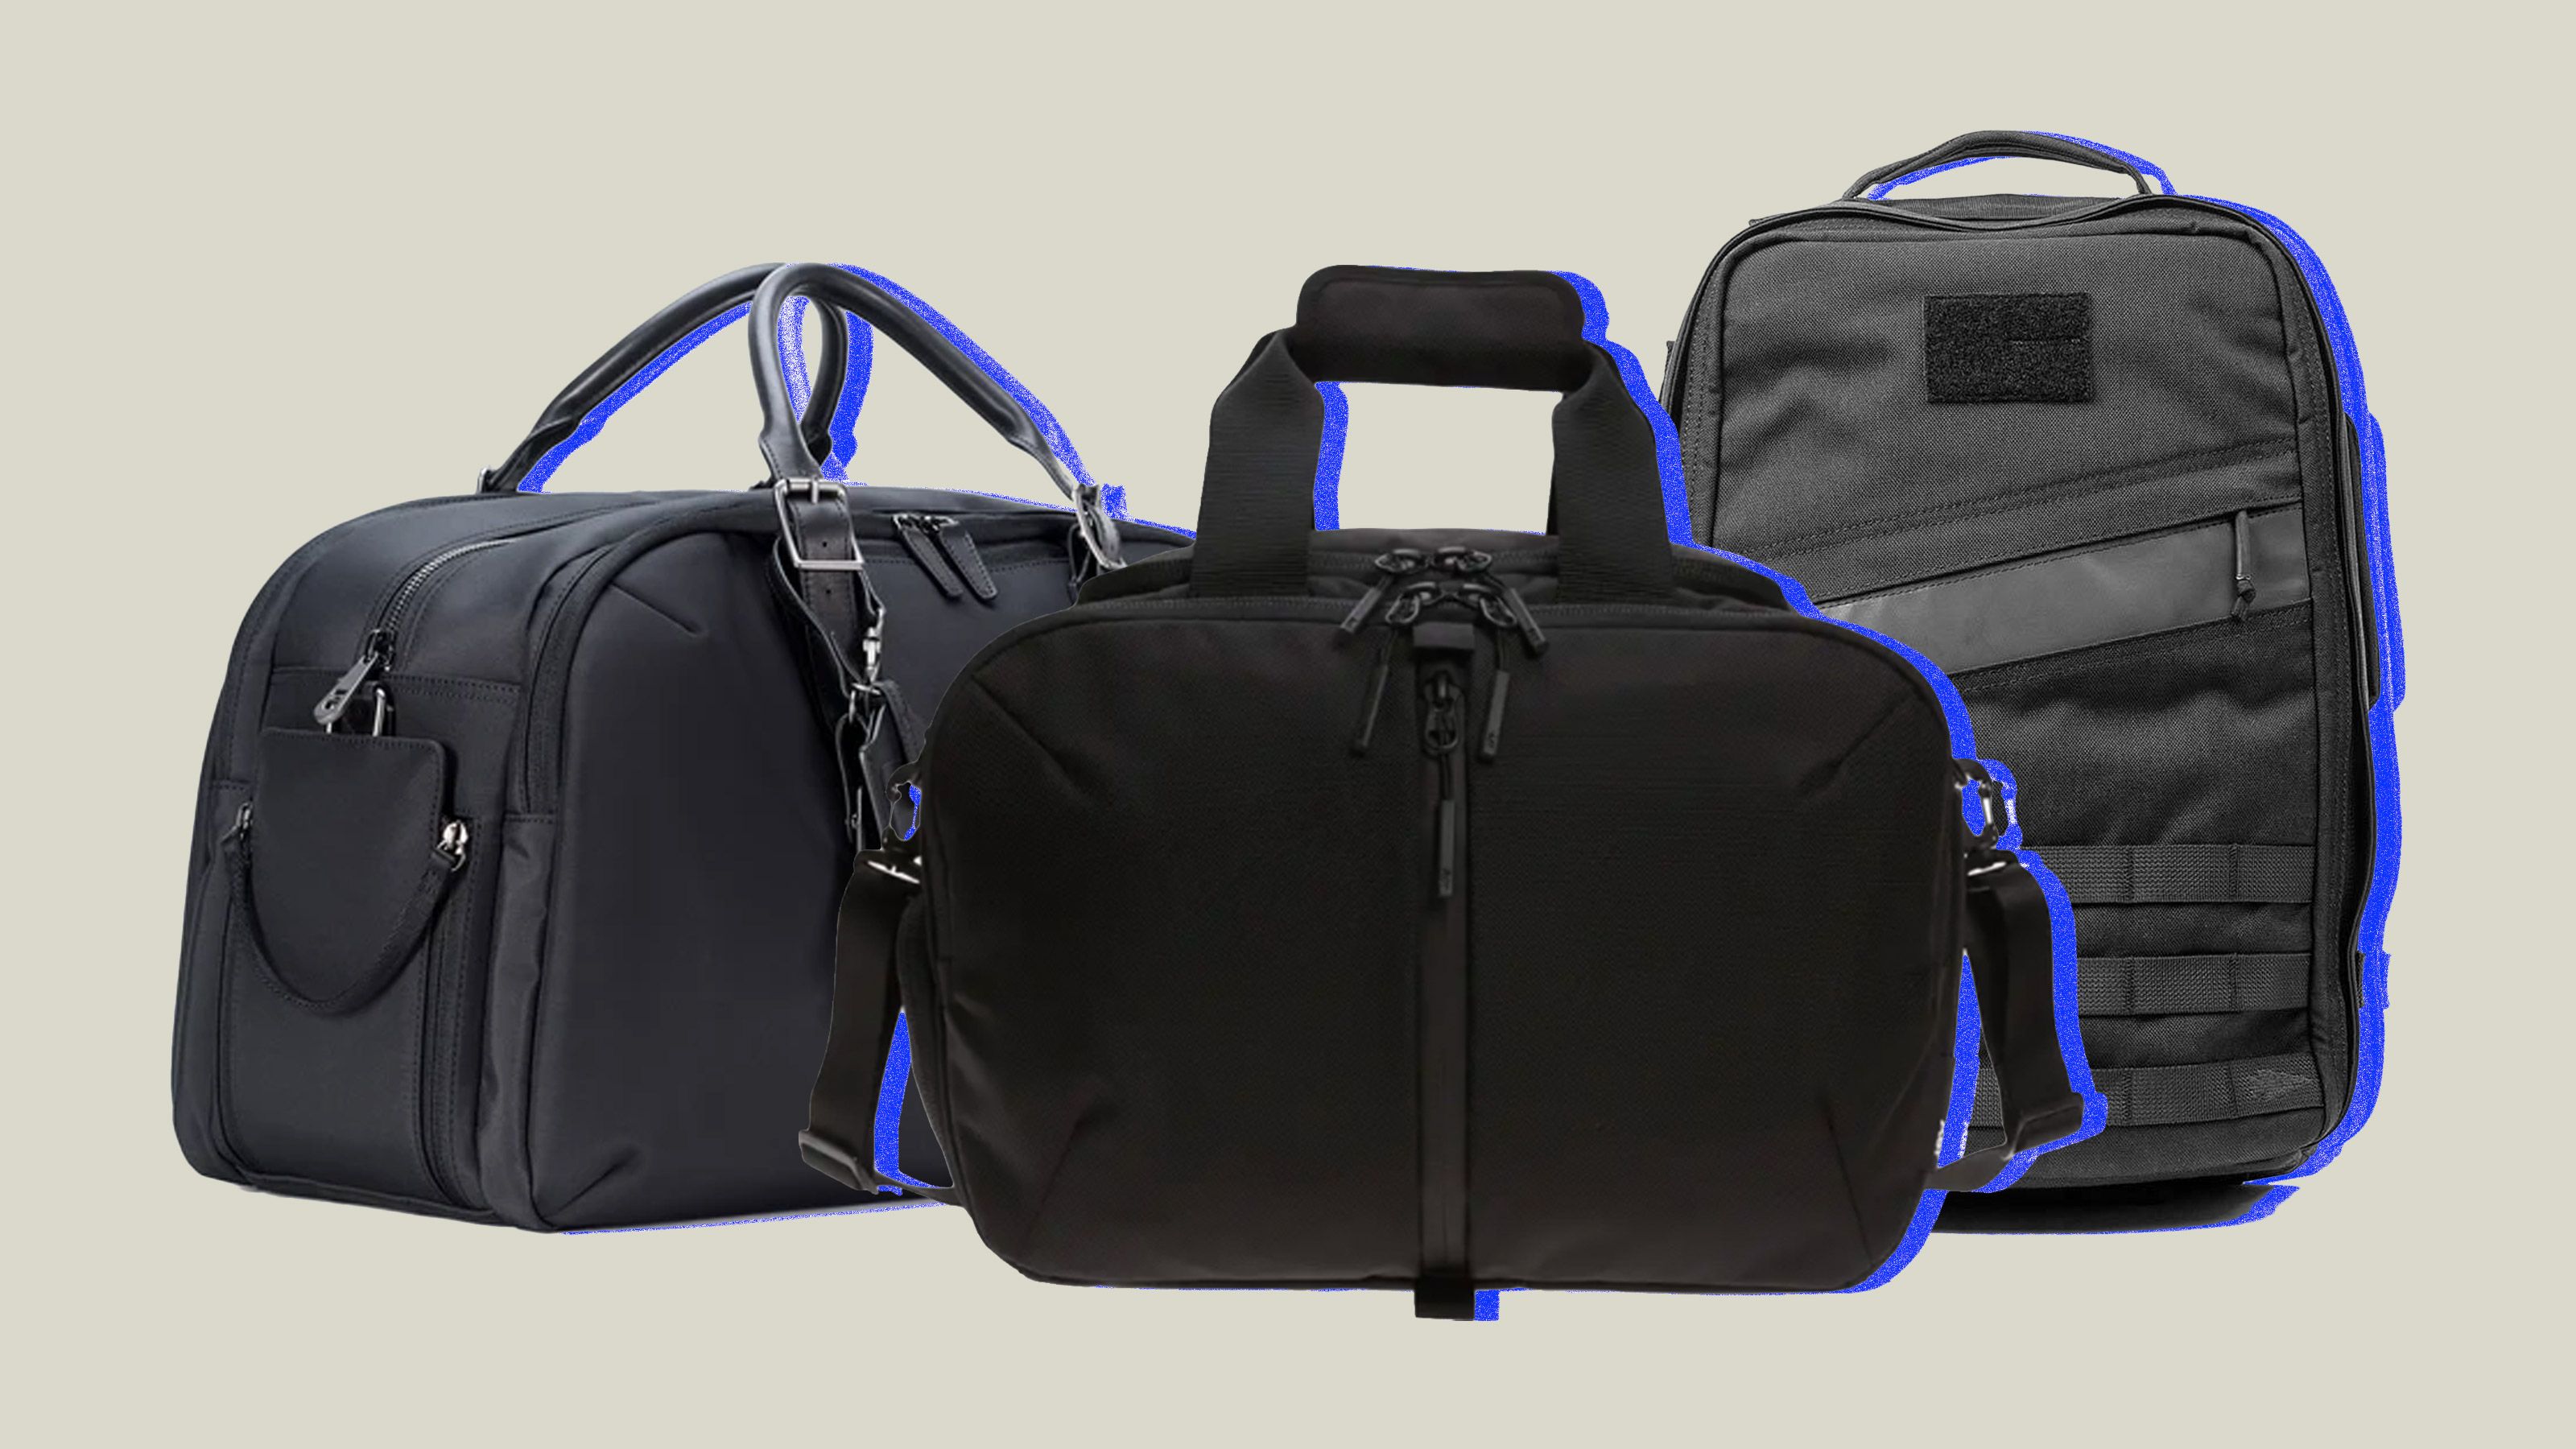 Insert Bag Hand Organizer Waterproof Travel Gym Backpack Shoulders 